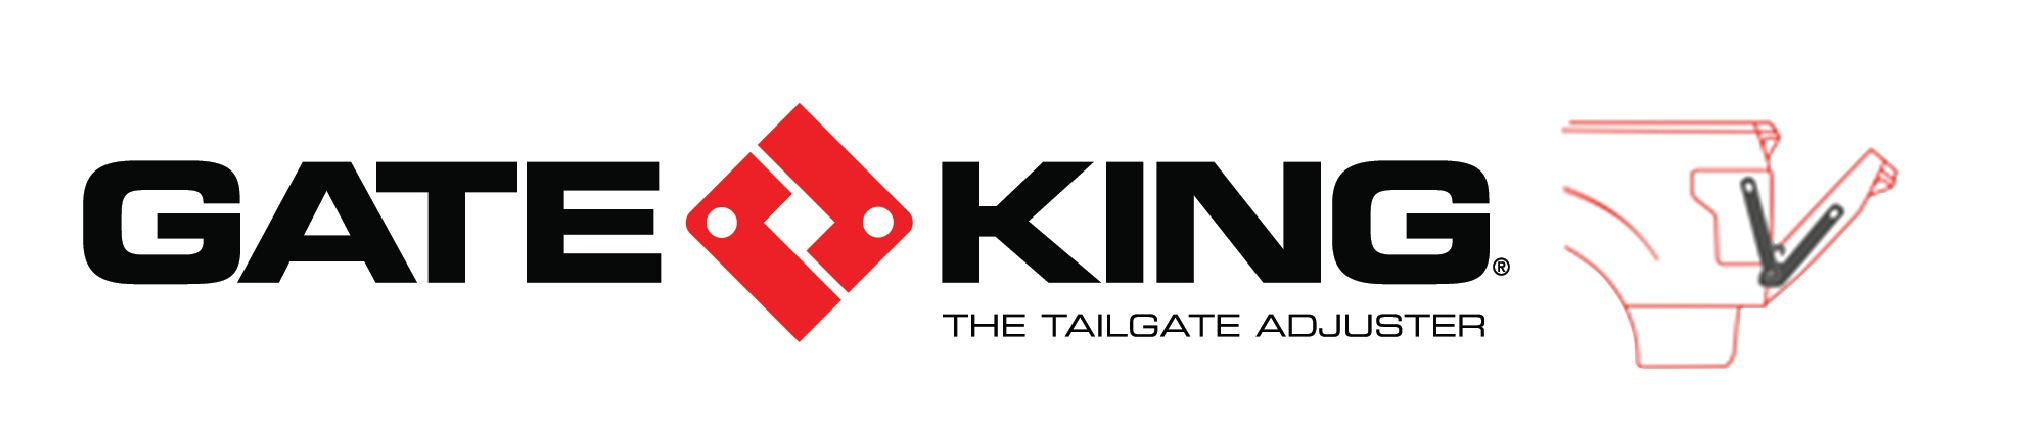 Gate King Logo - Silhouette copy